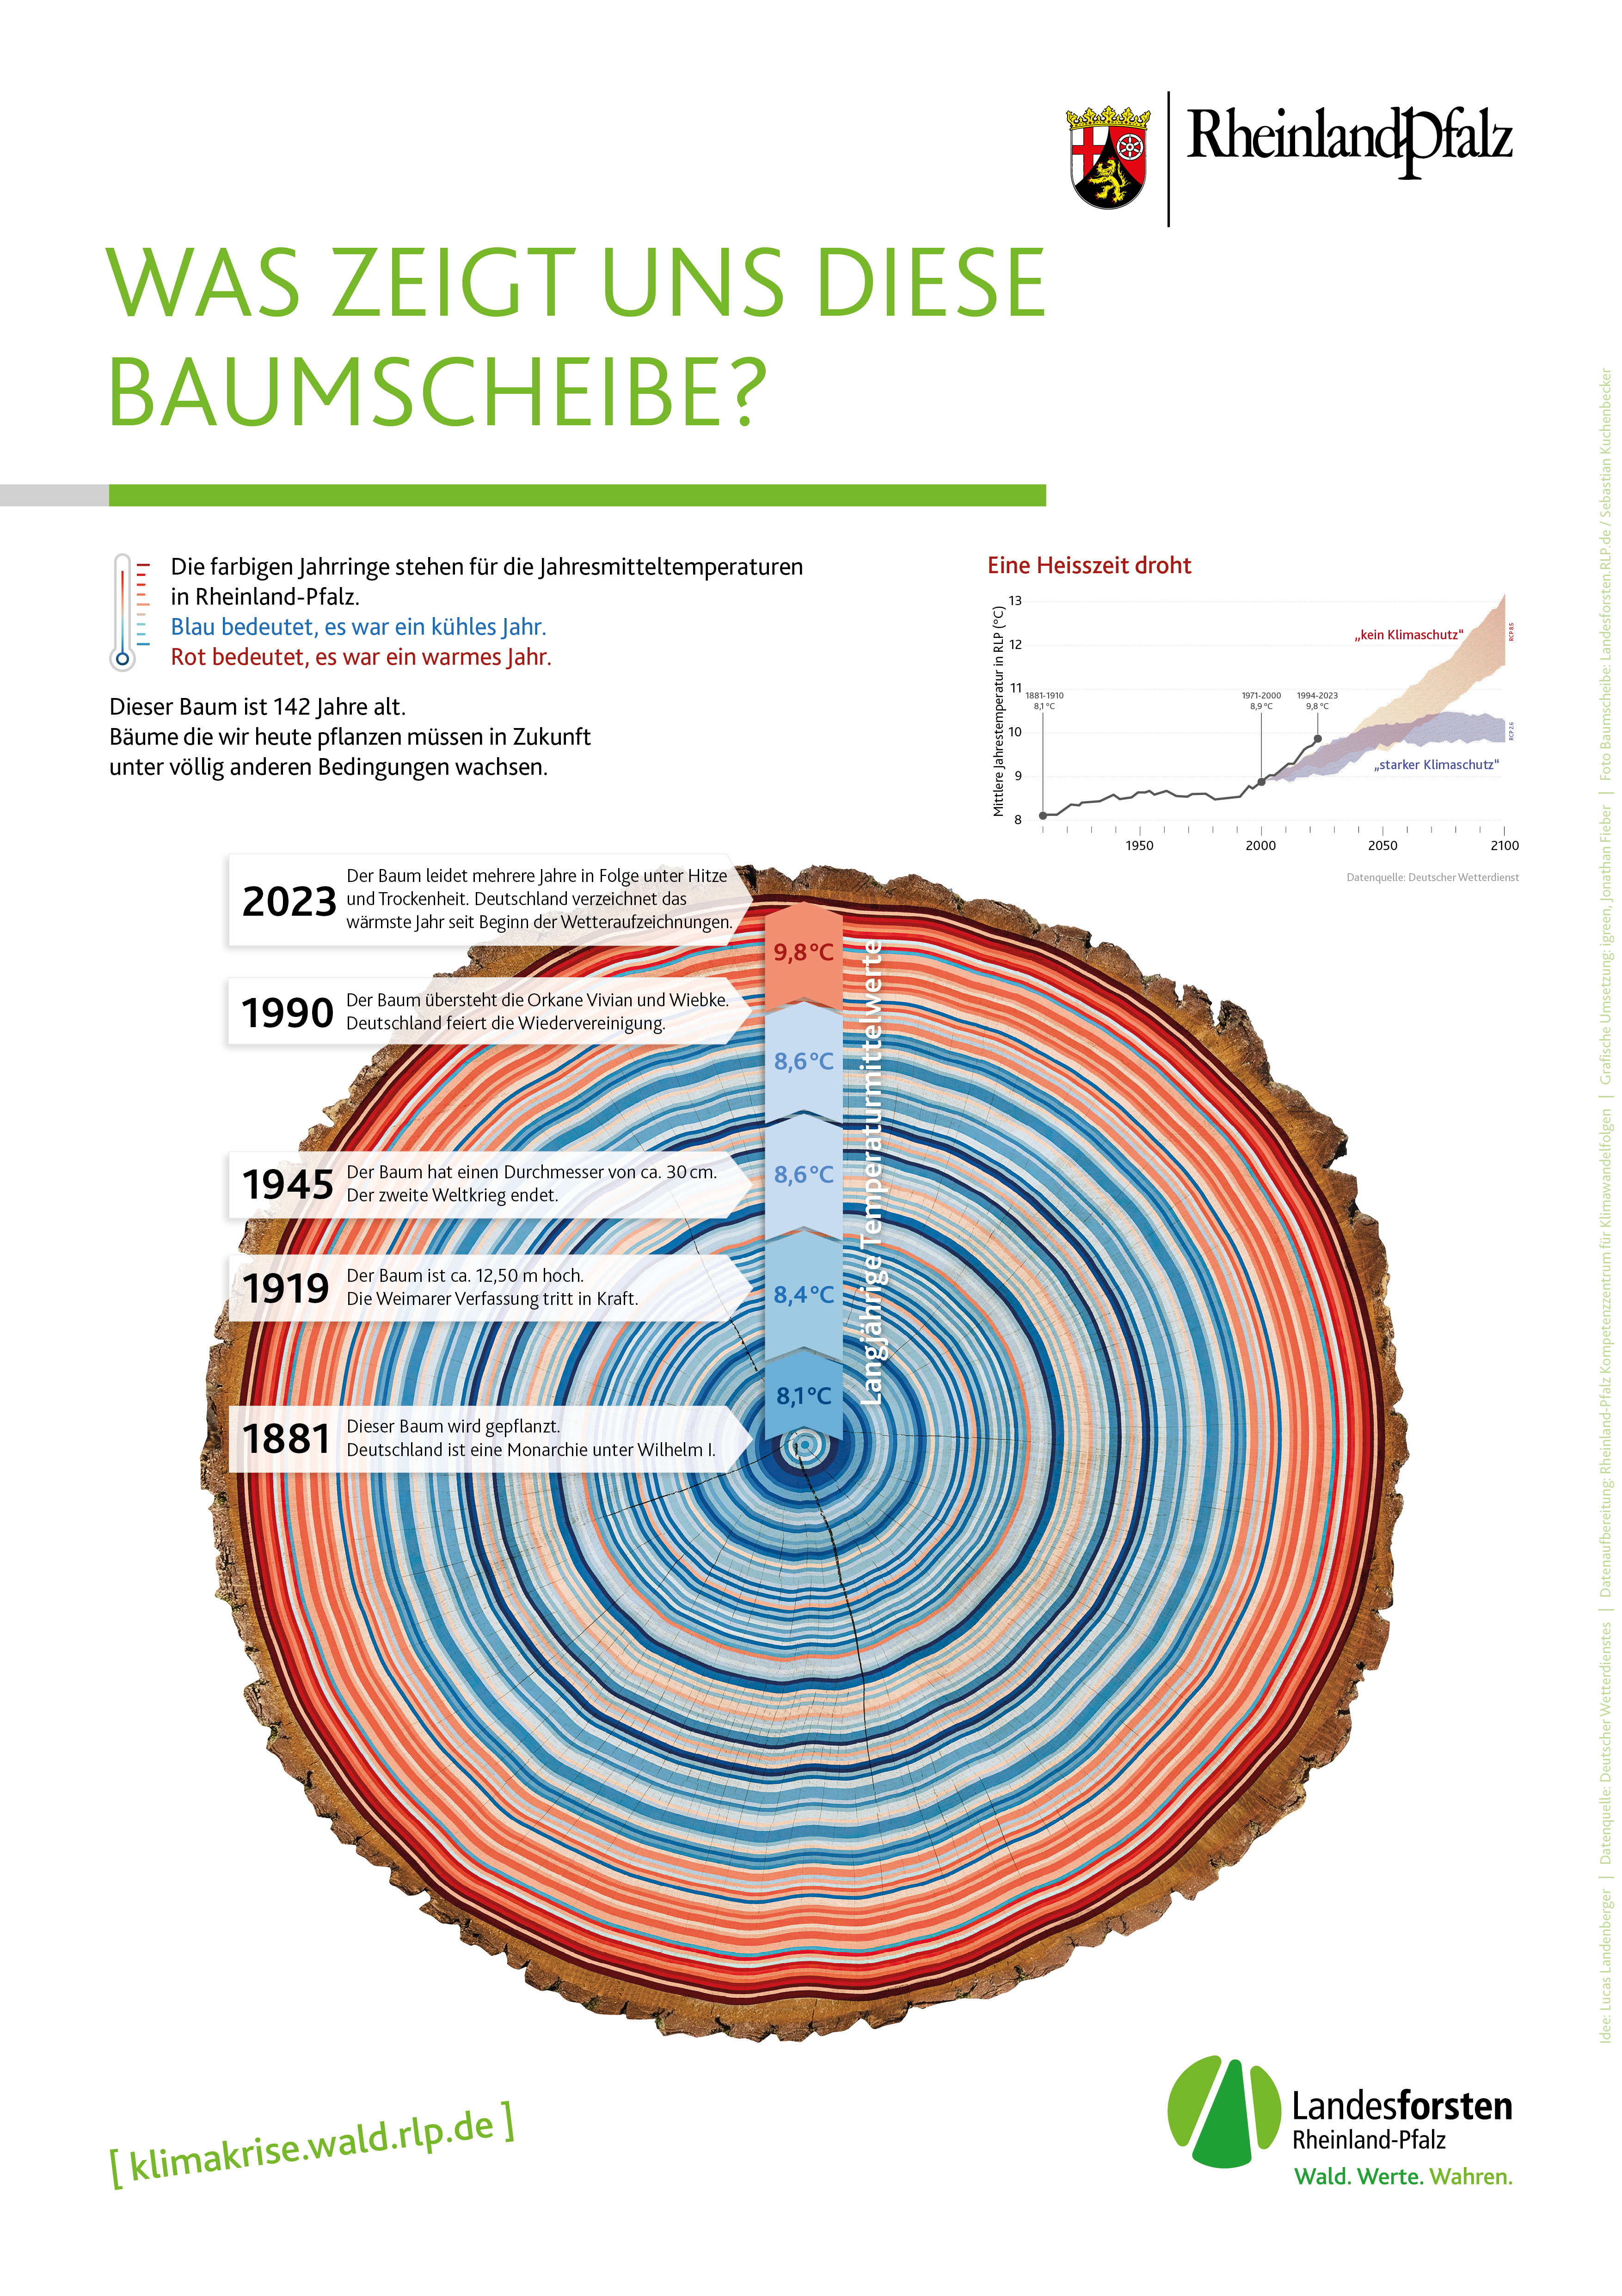 Diese Baumscheibe zeigt den Klimawandel